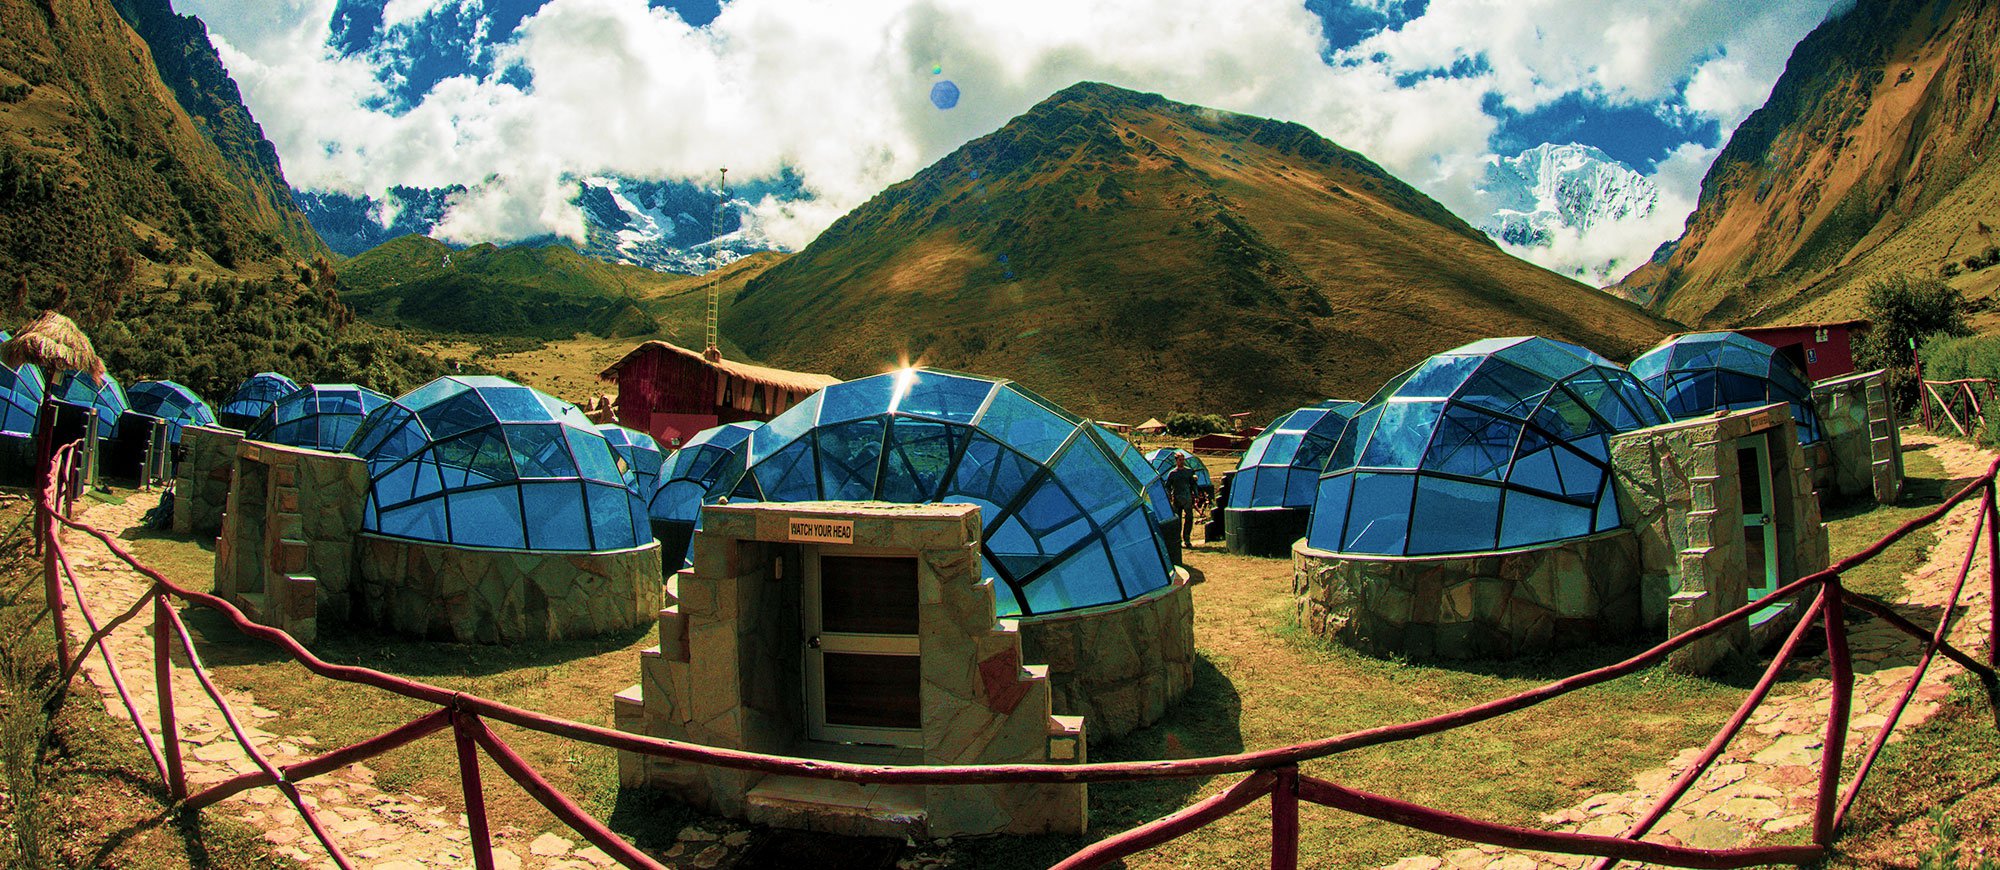 Sky Camp - Peru